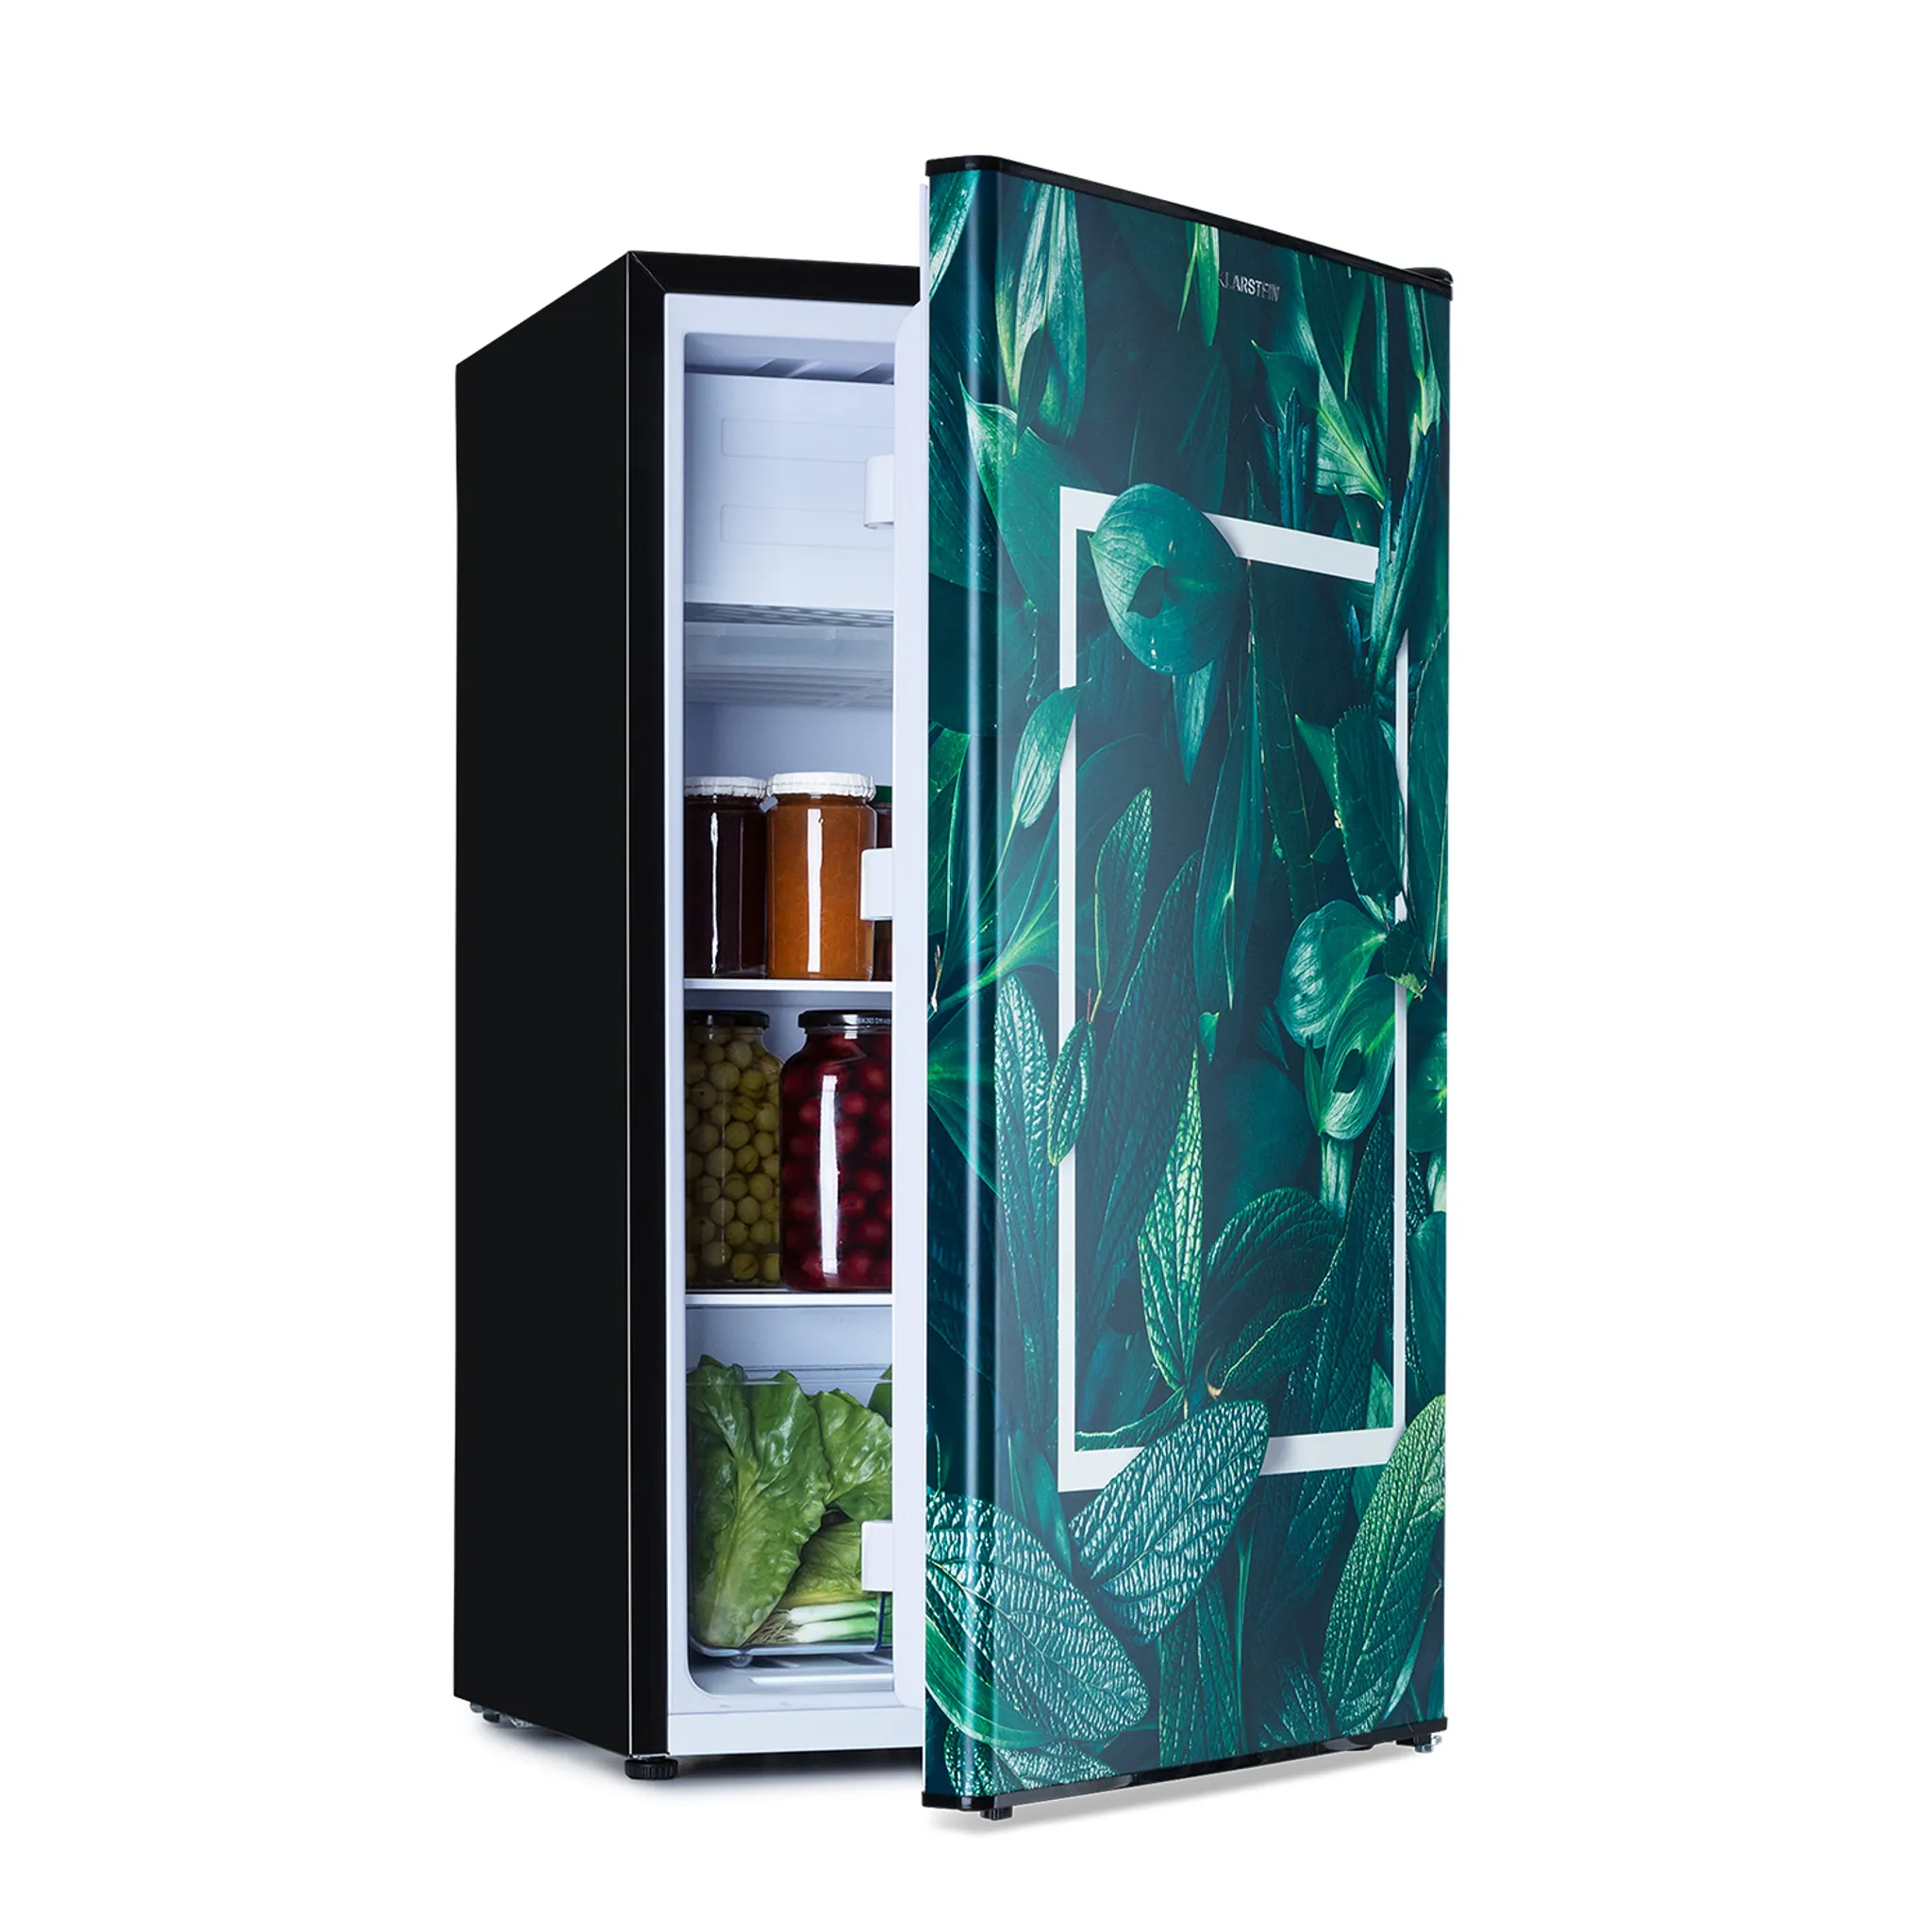 MERAX® Kühlschrank 92L Mini Kühl Gefrierkombination Gefrierfach  Gefrierschrank